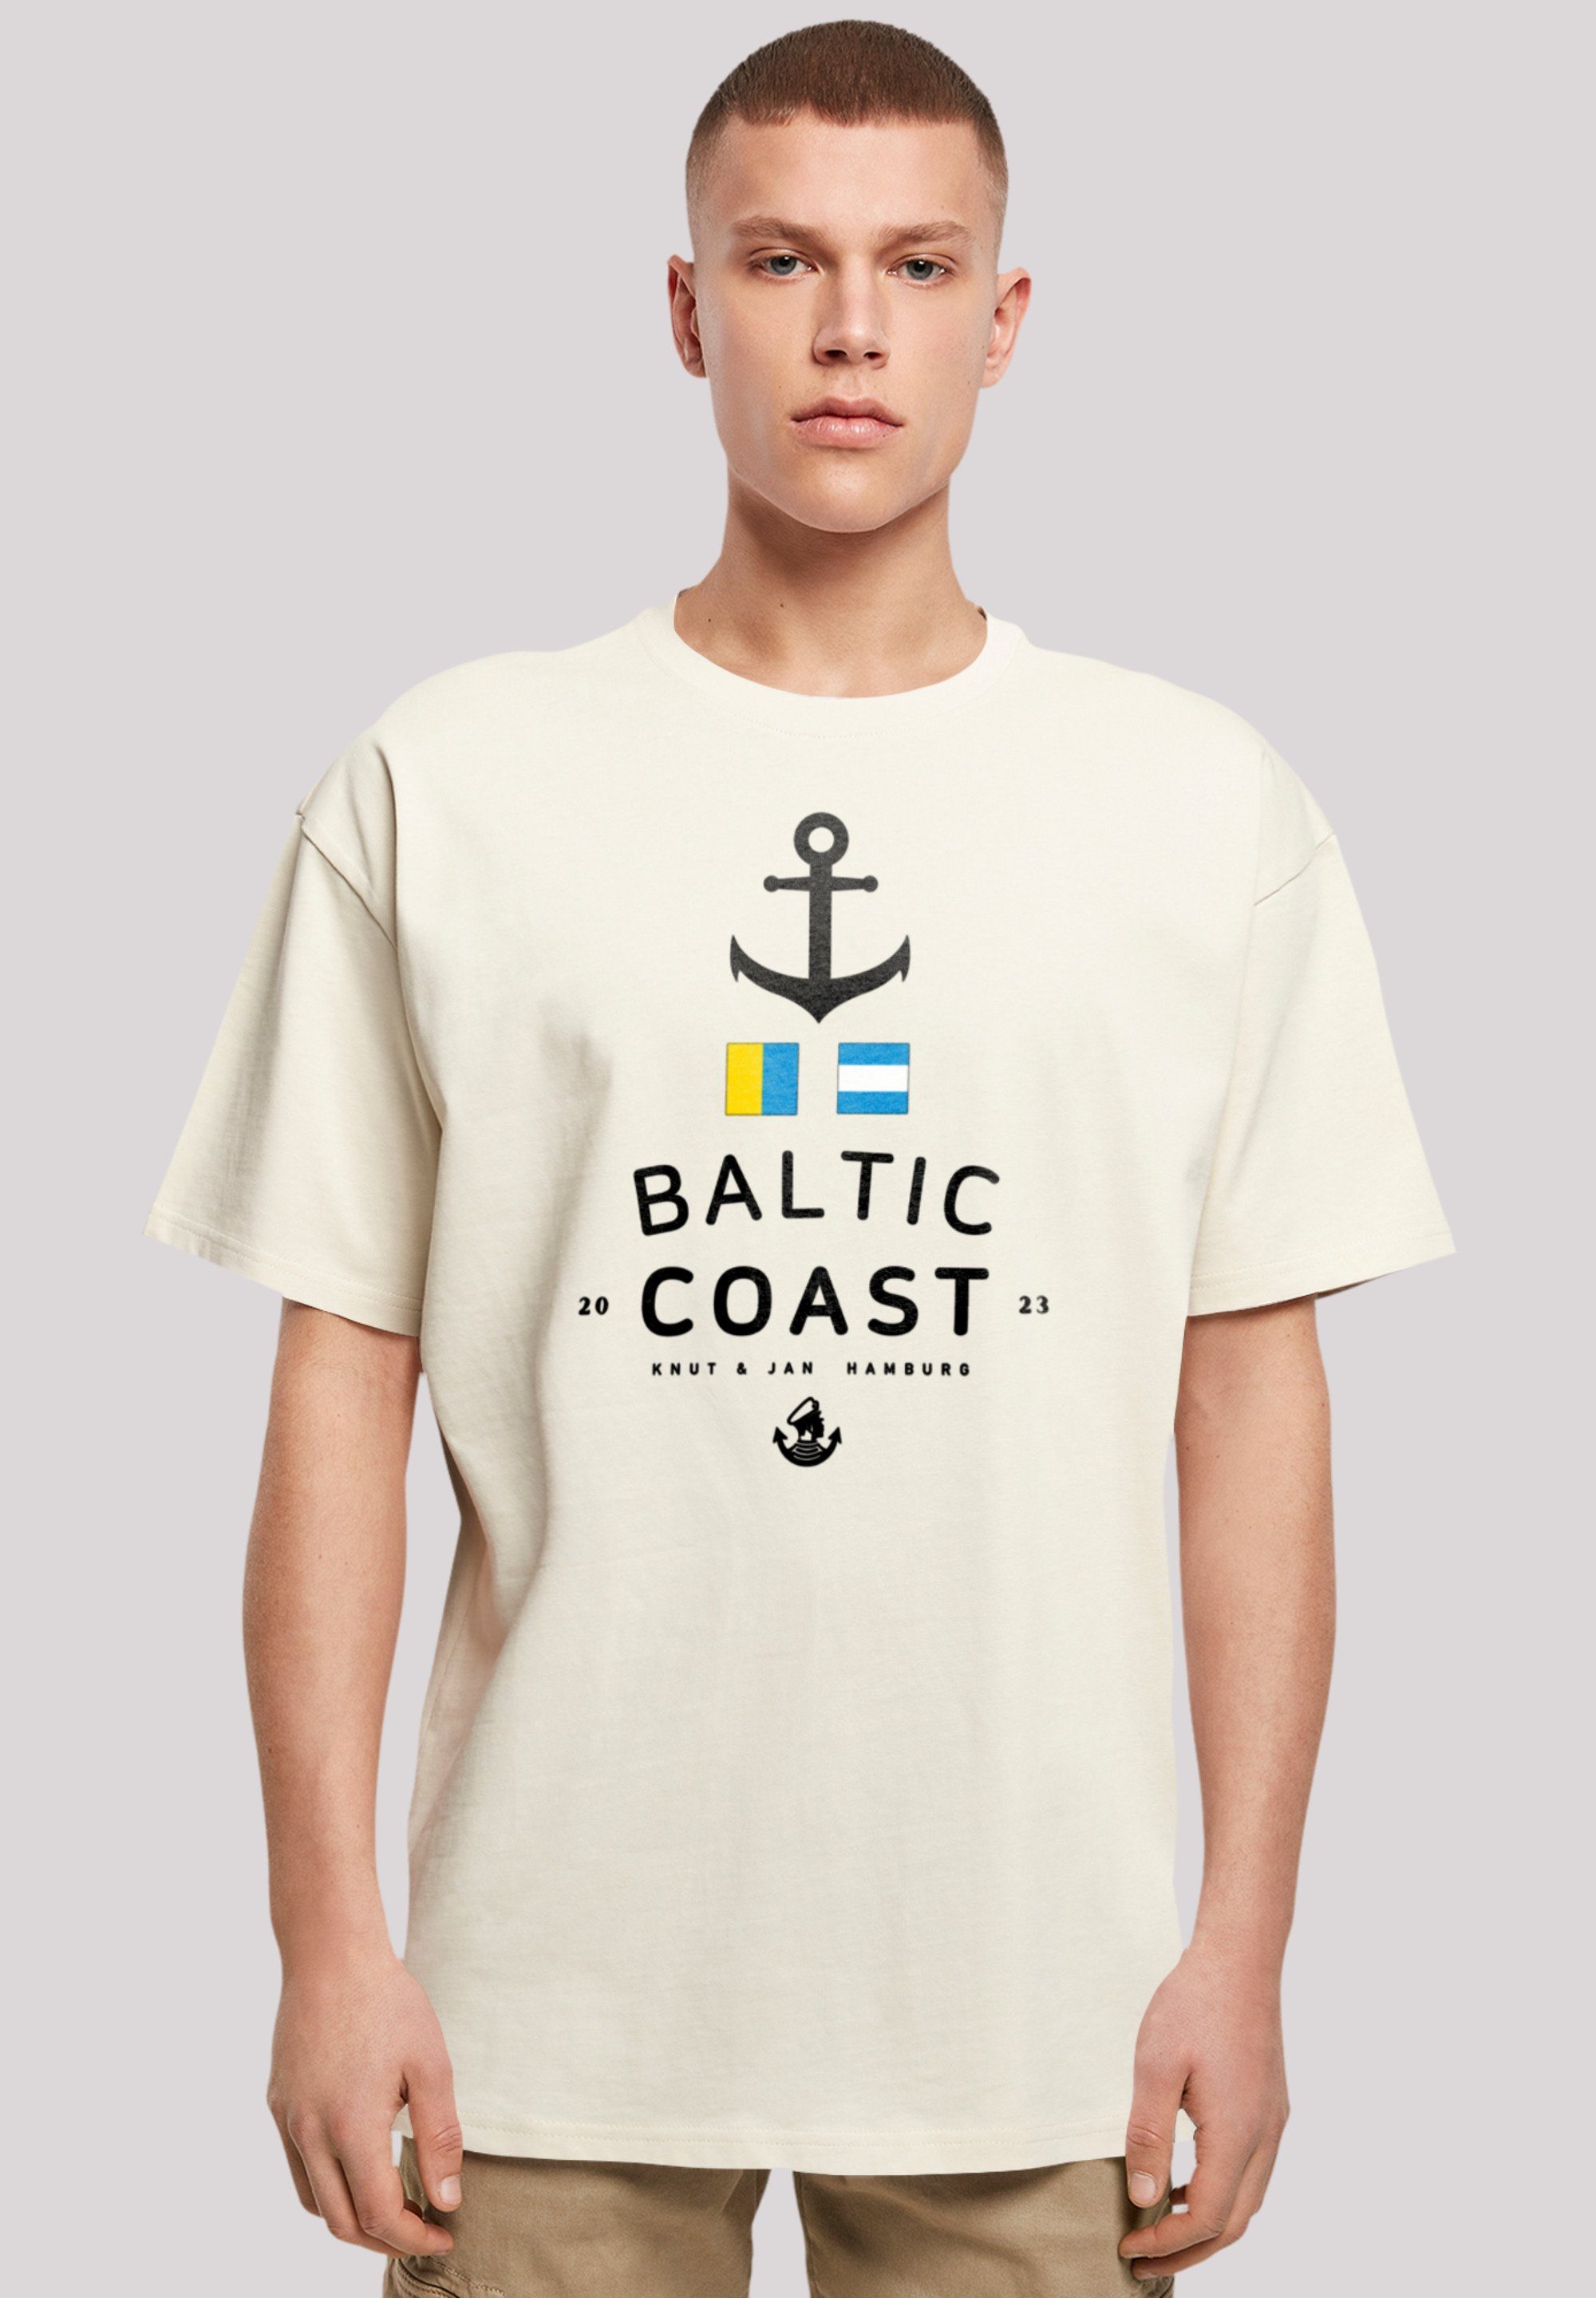 Print T-Shirt Knut sand Ostsee Baltic Sea F4NT4STIC Hamburg & Jan